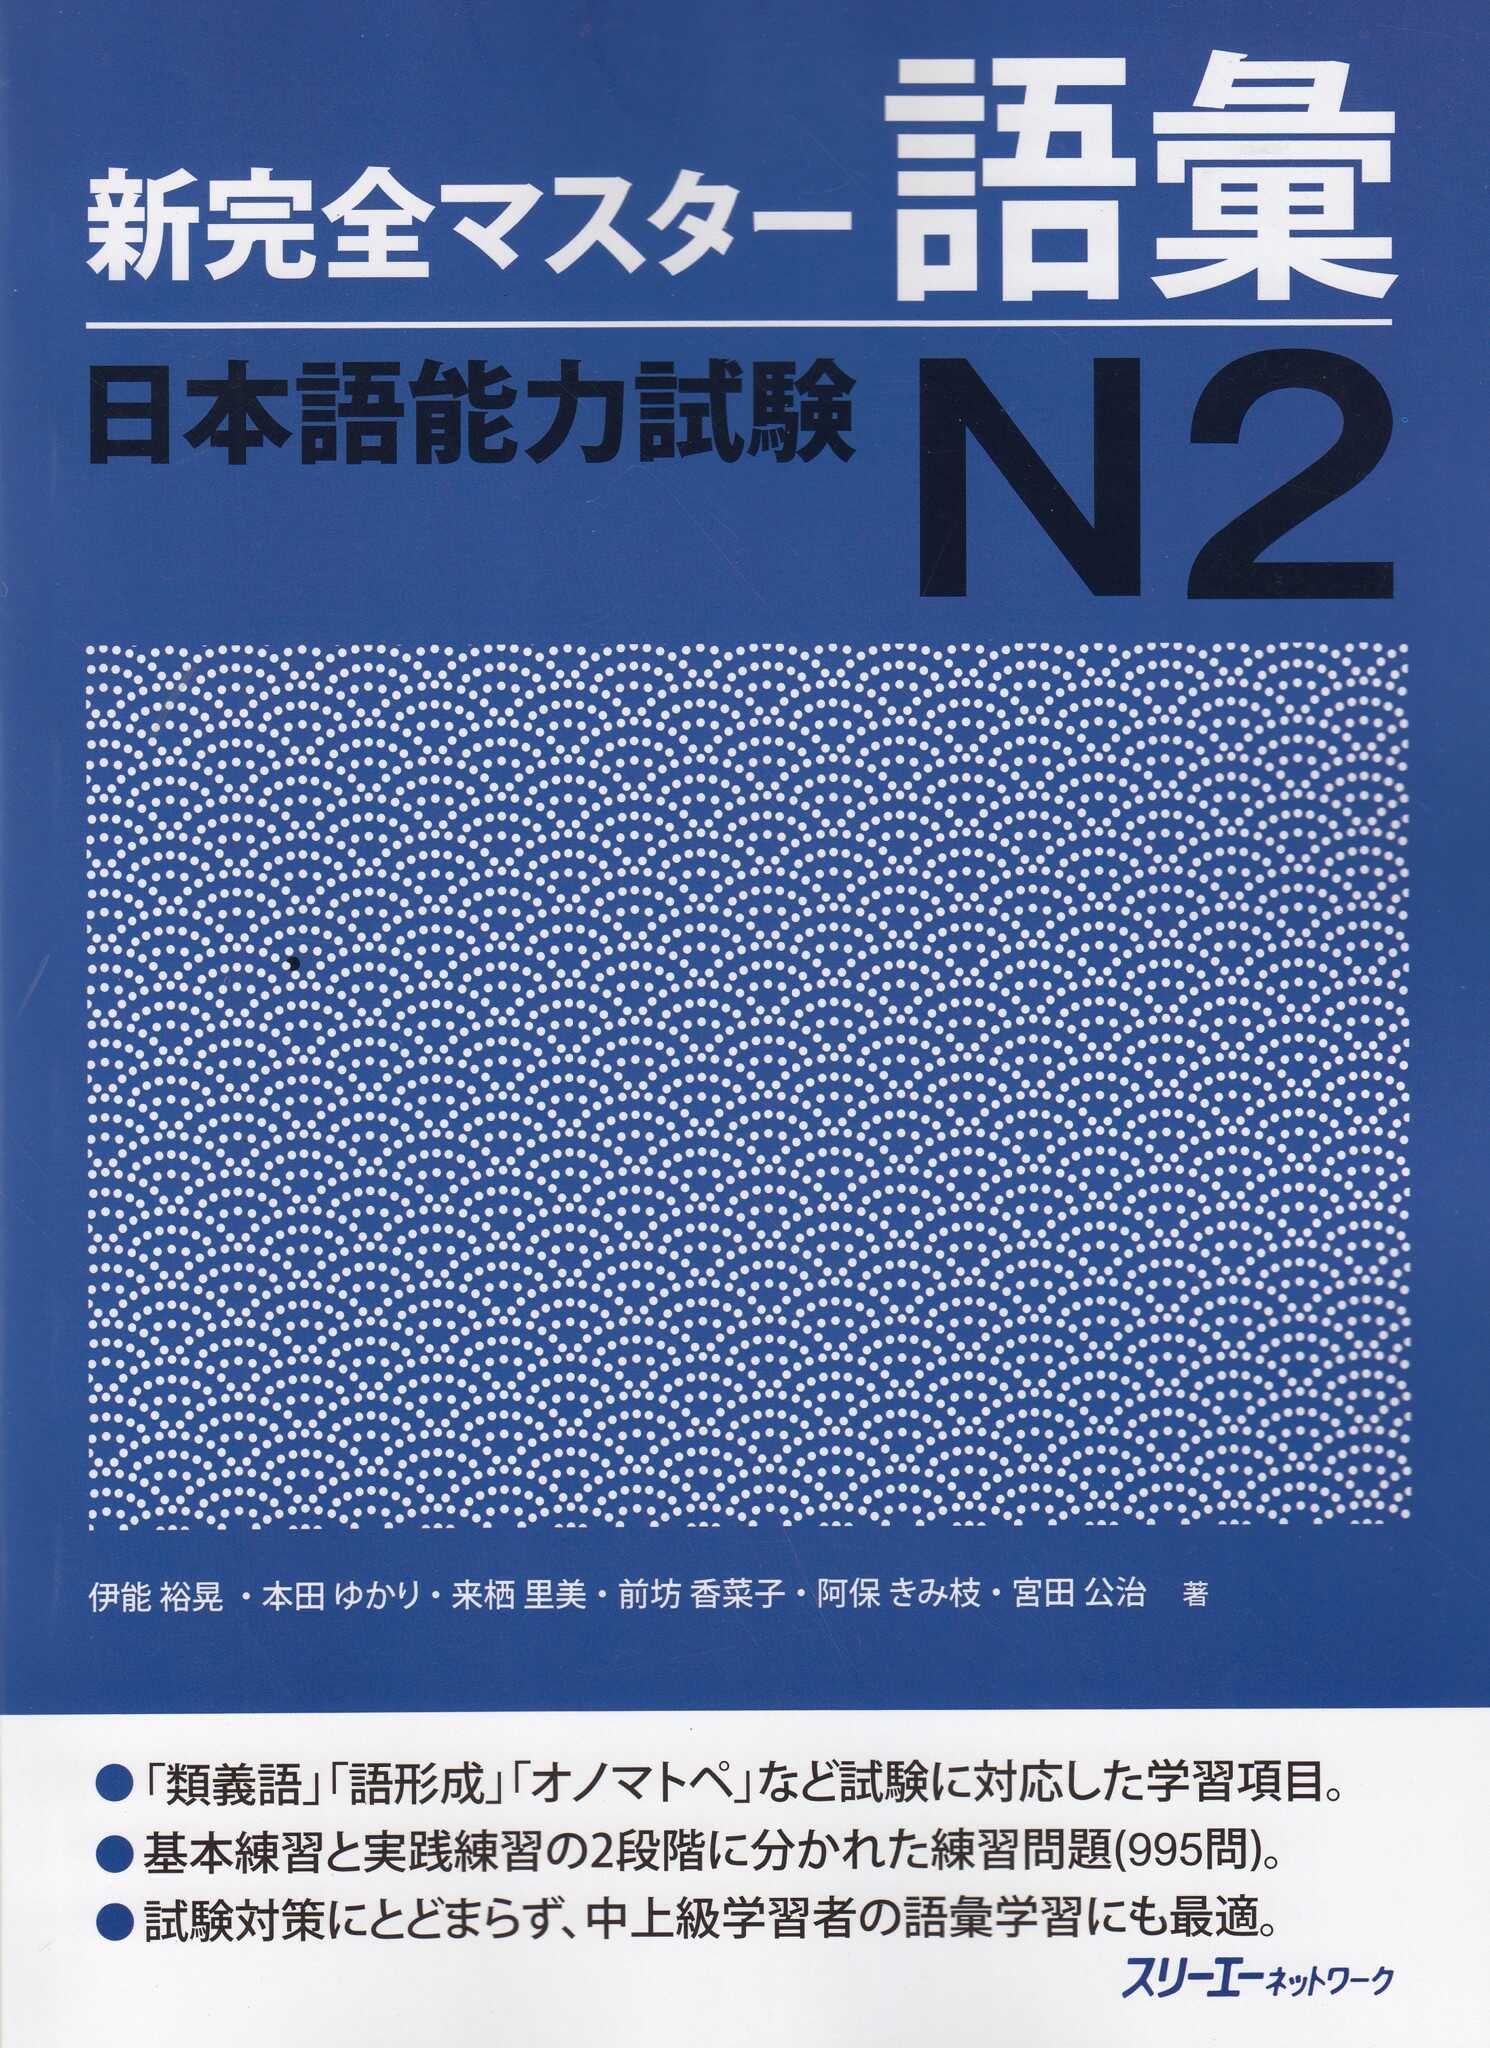 Giáo Trình Shinkanzen Master N2 – Phần Từ Vựng GOI | 新完全マスター語彙 日本語能力試験 N2